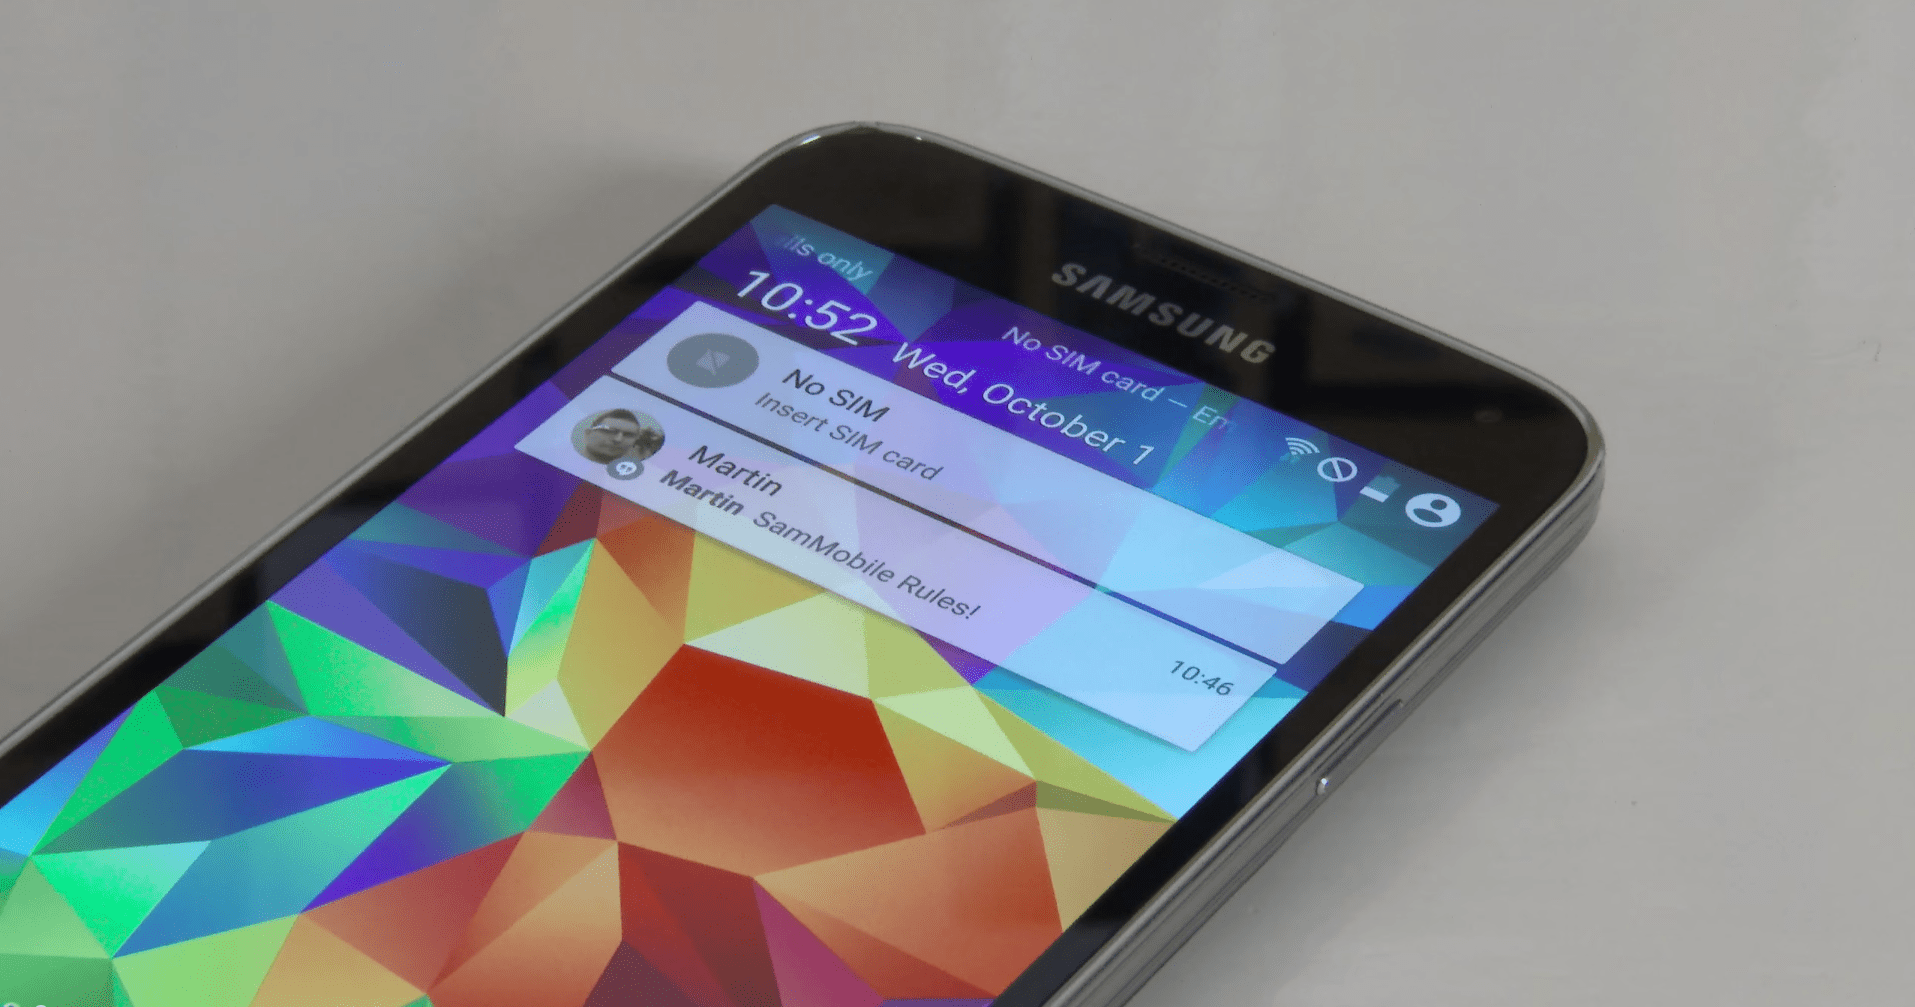 Le Samsung Galaxy S5 sous Android L avec le Material Design se montre en vidéo